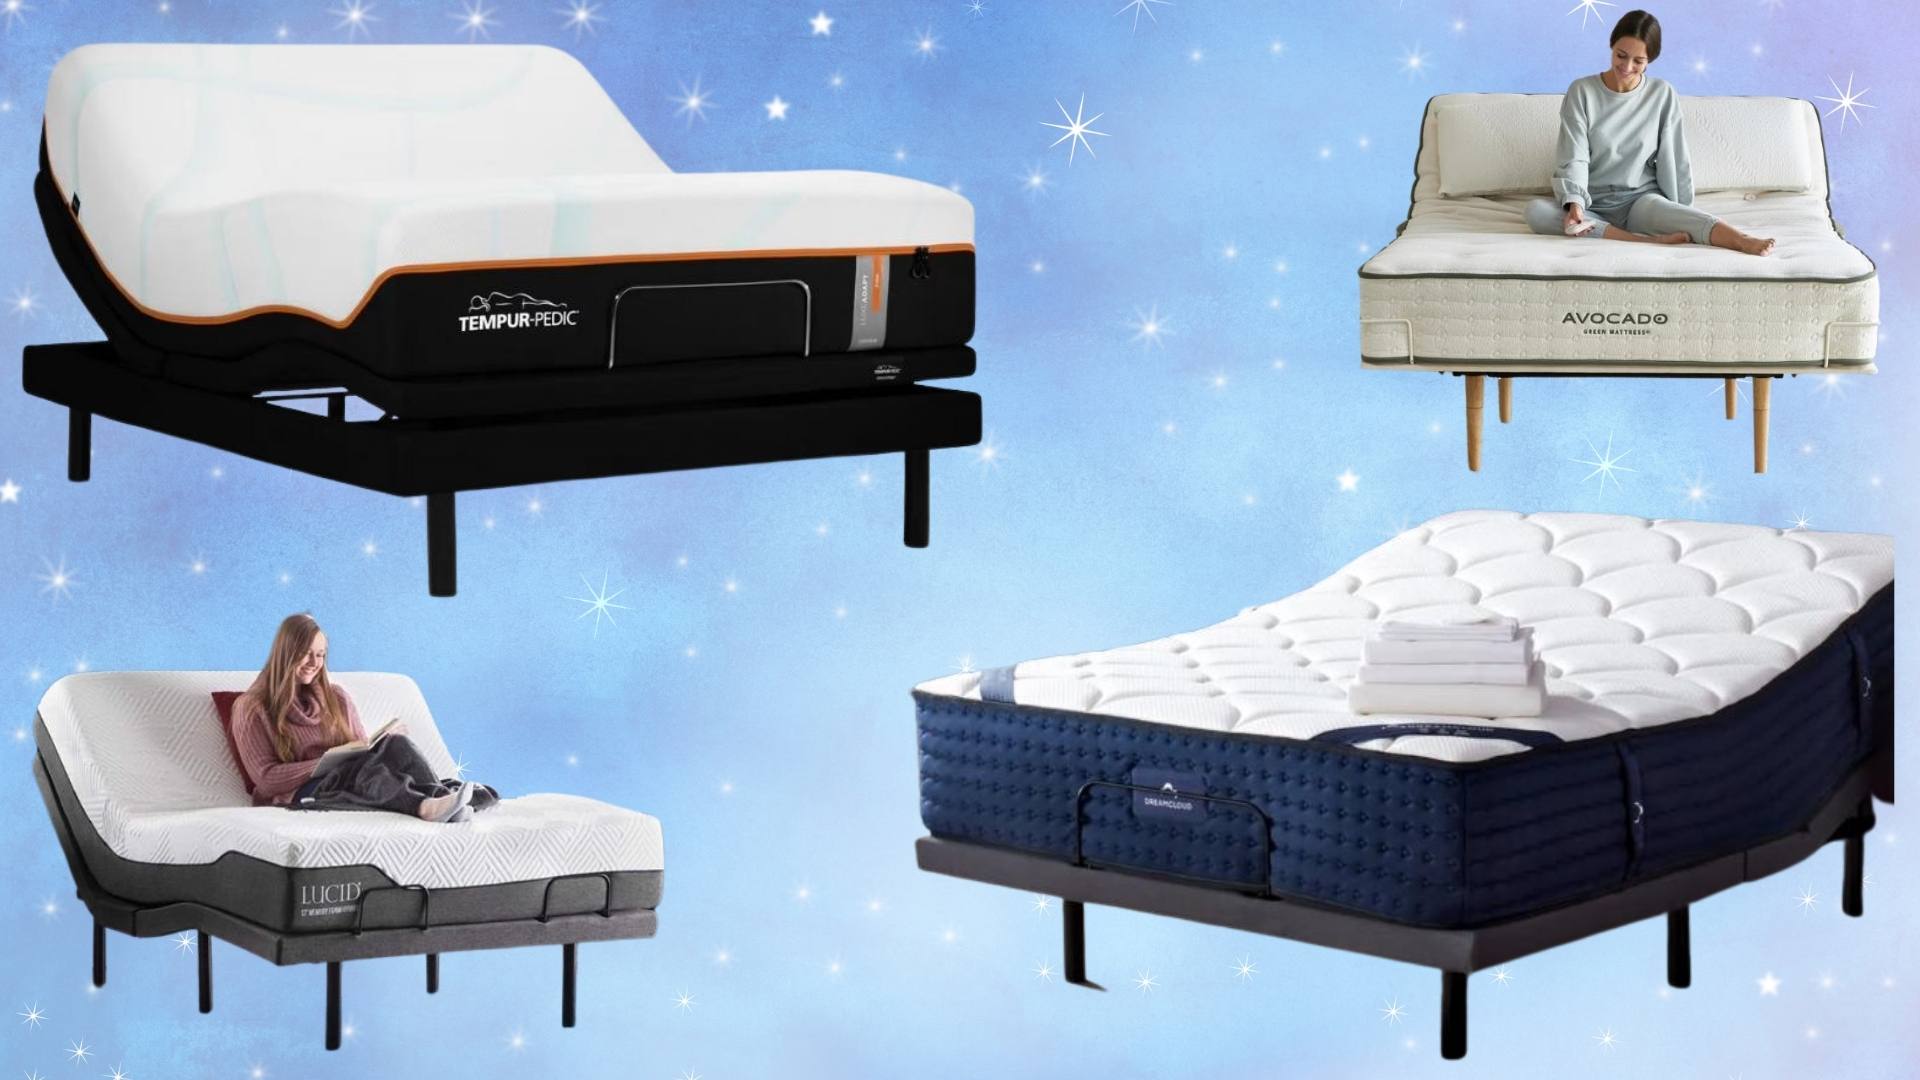 mattresses for adjustable beds reddit